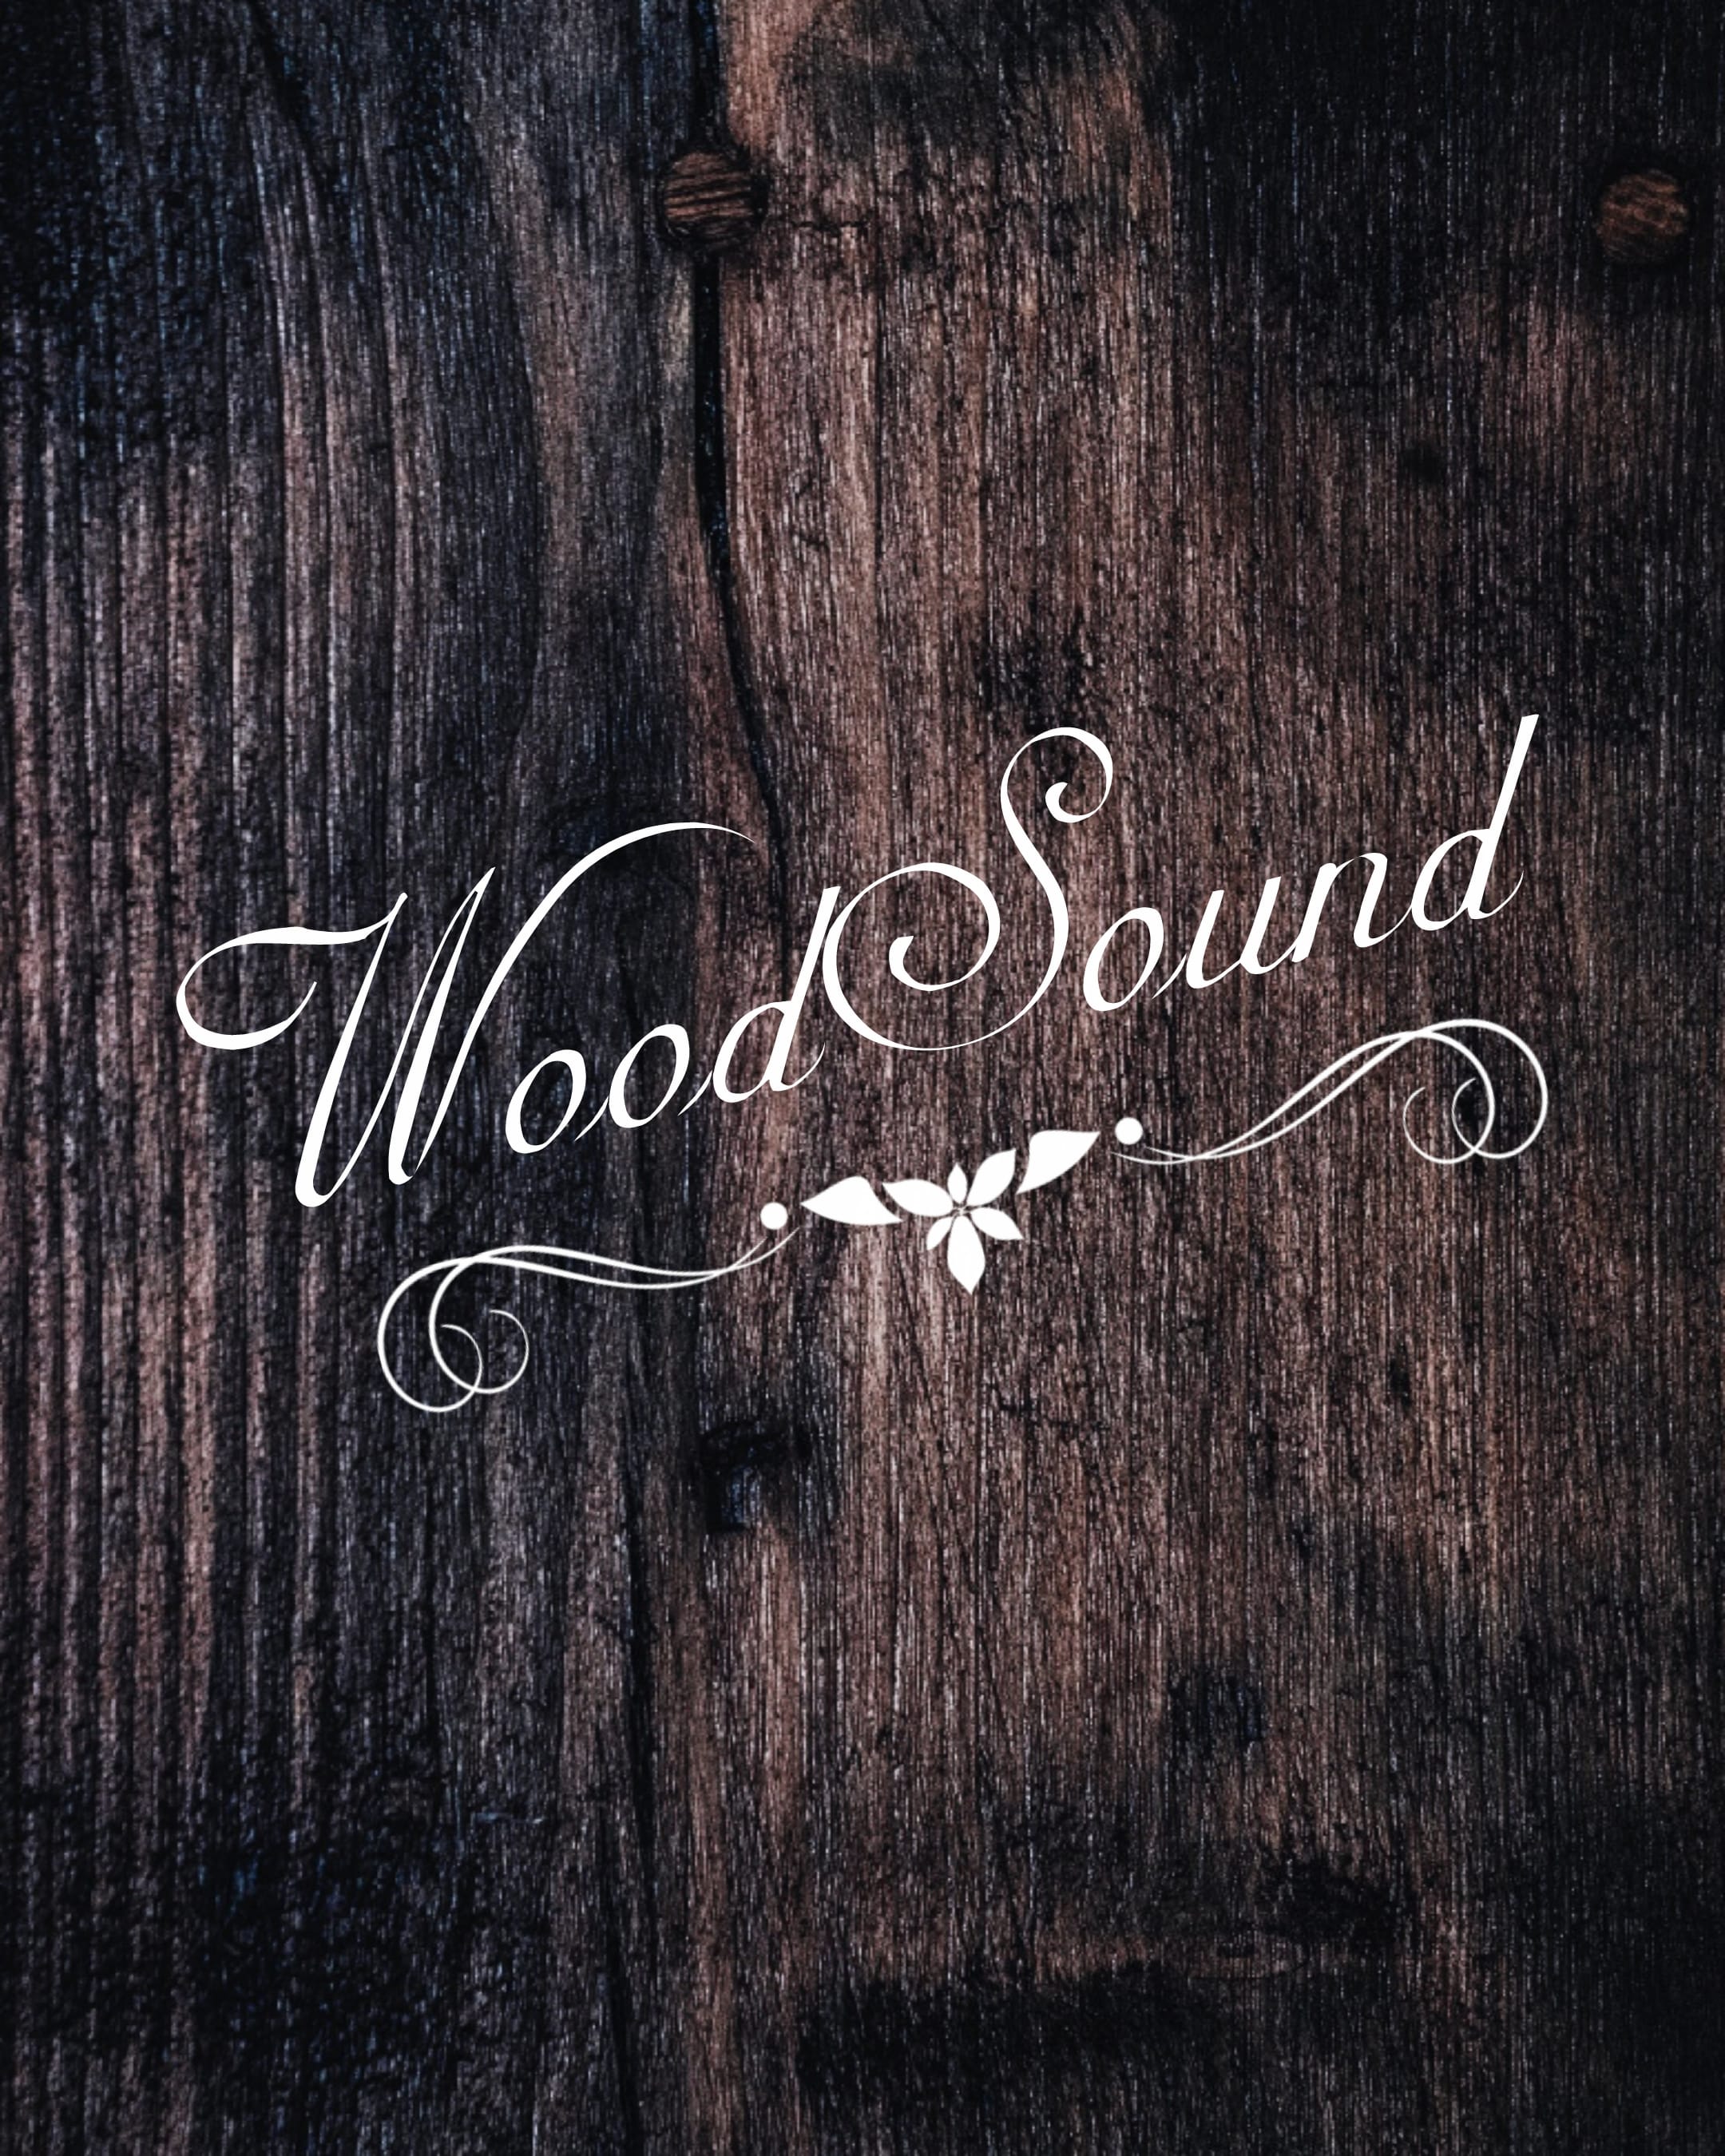 woodSound